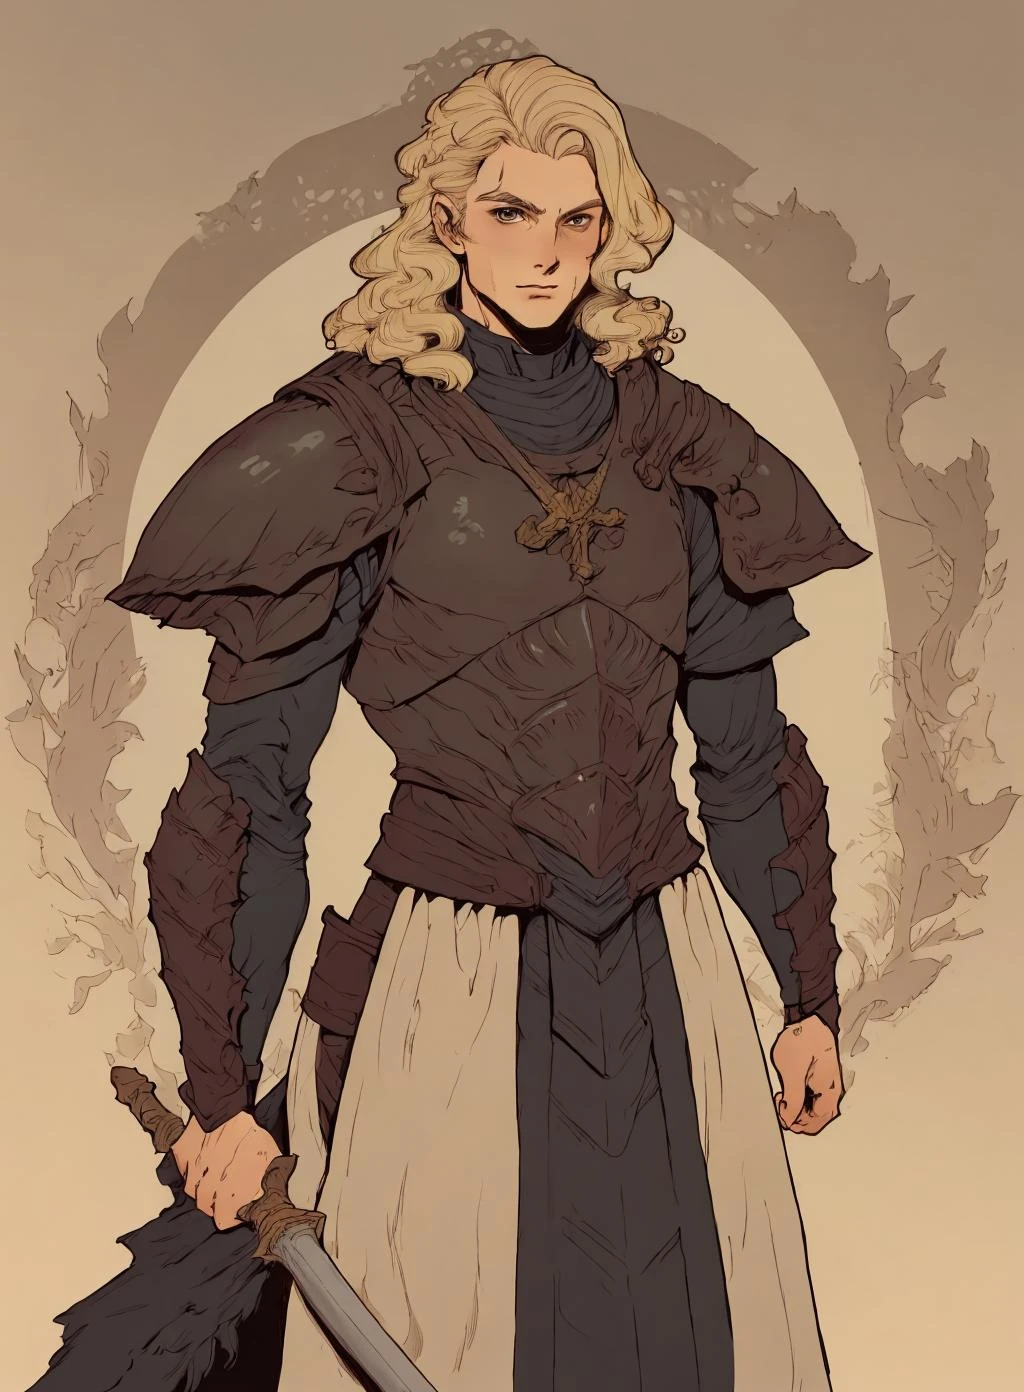 dibujo de un hombre,
pelo rubio,   armadura, guerrero medieval,  solo,
